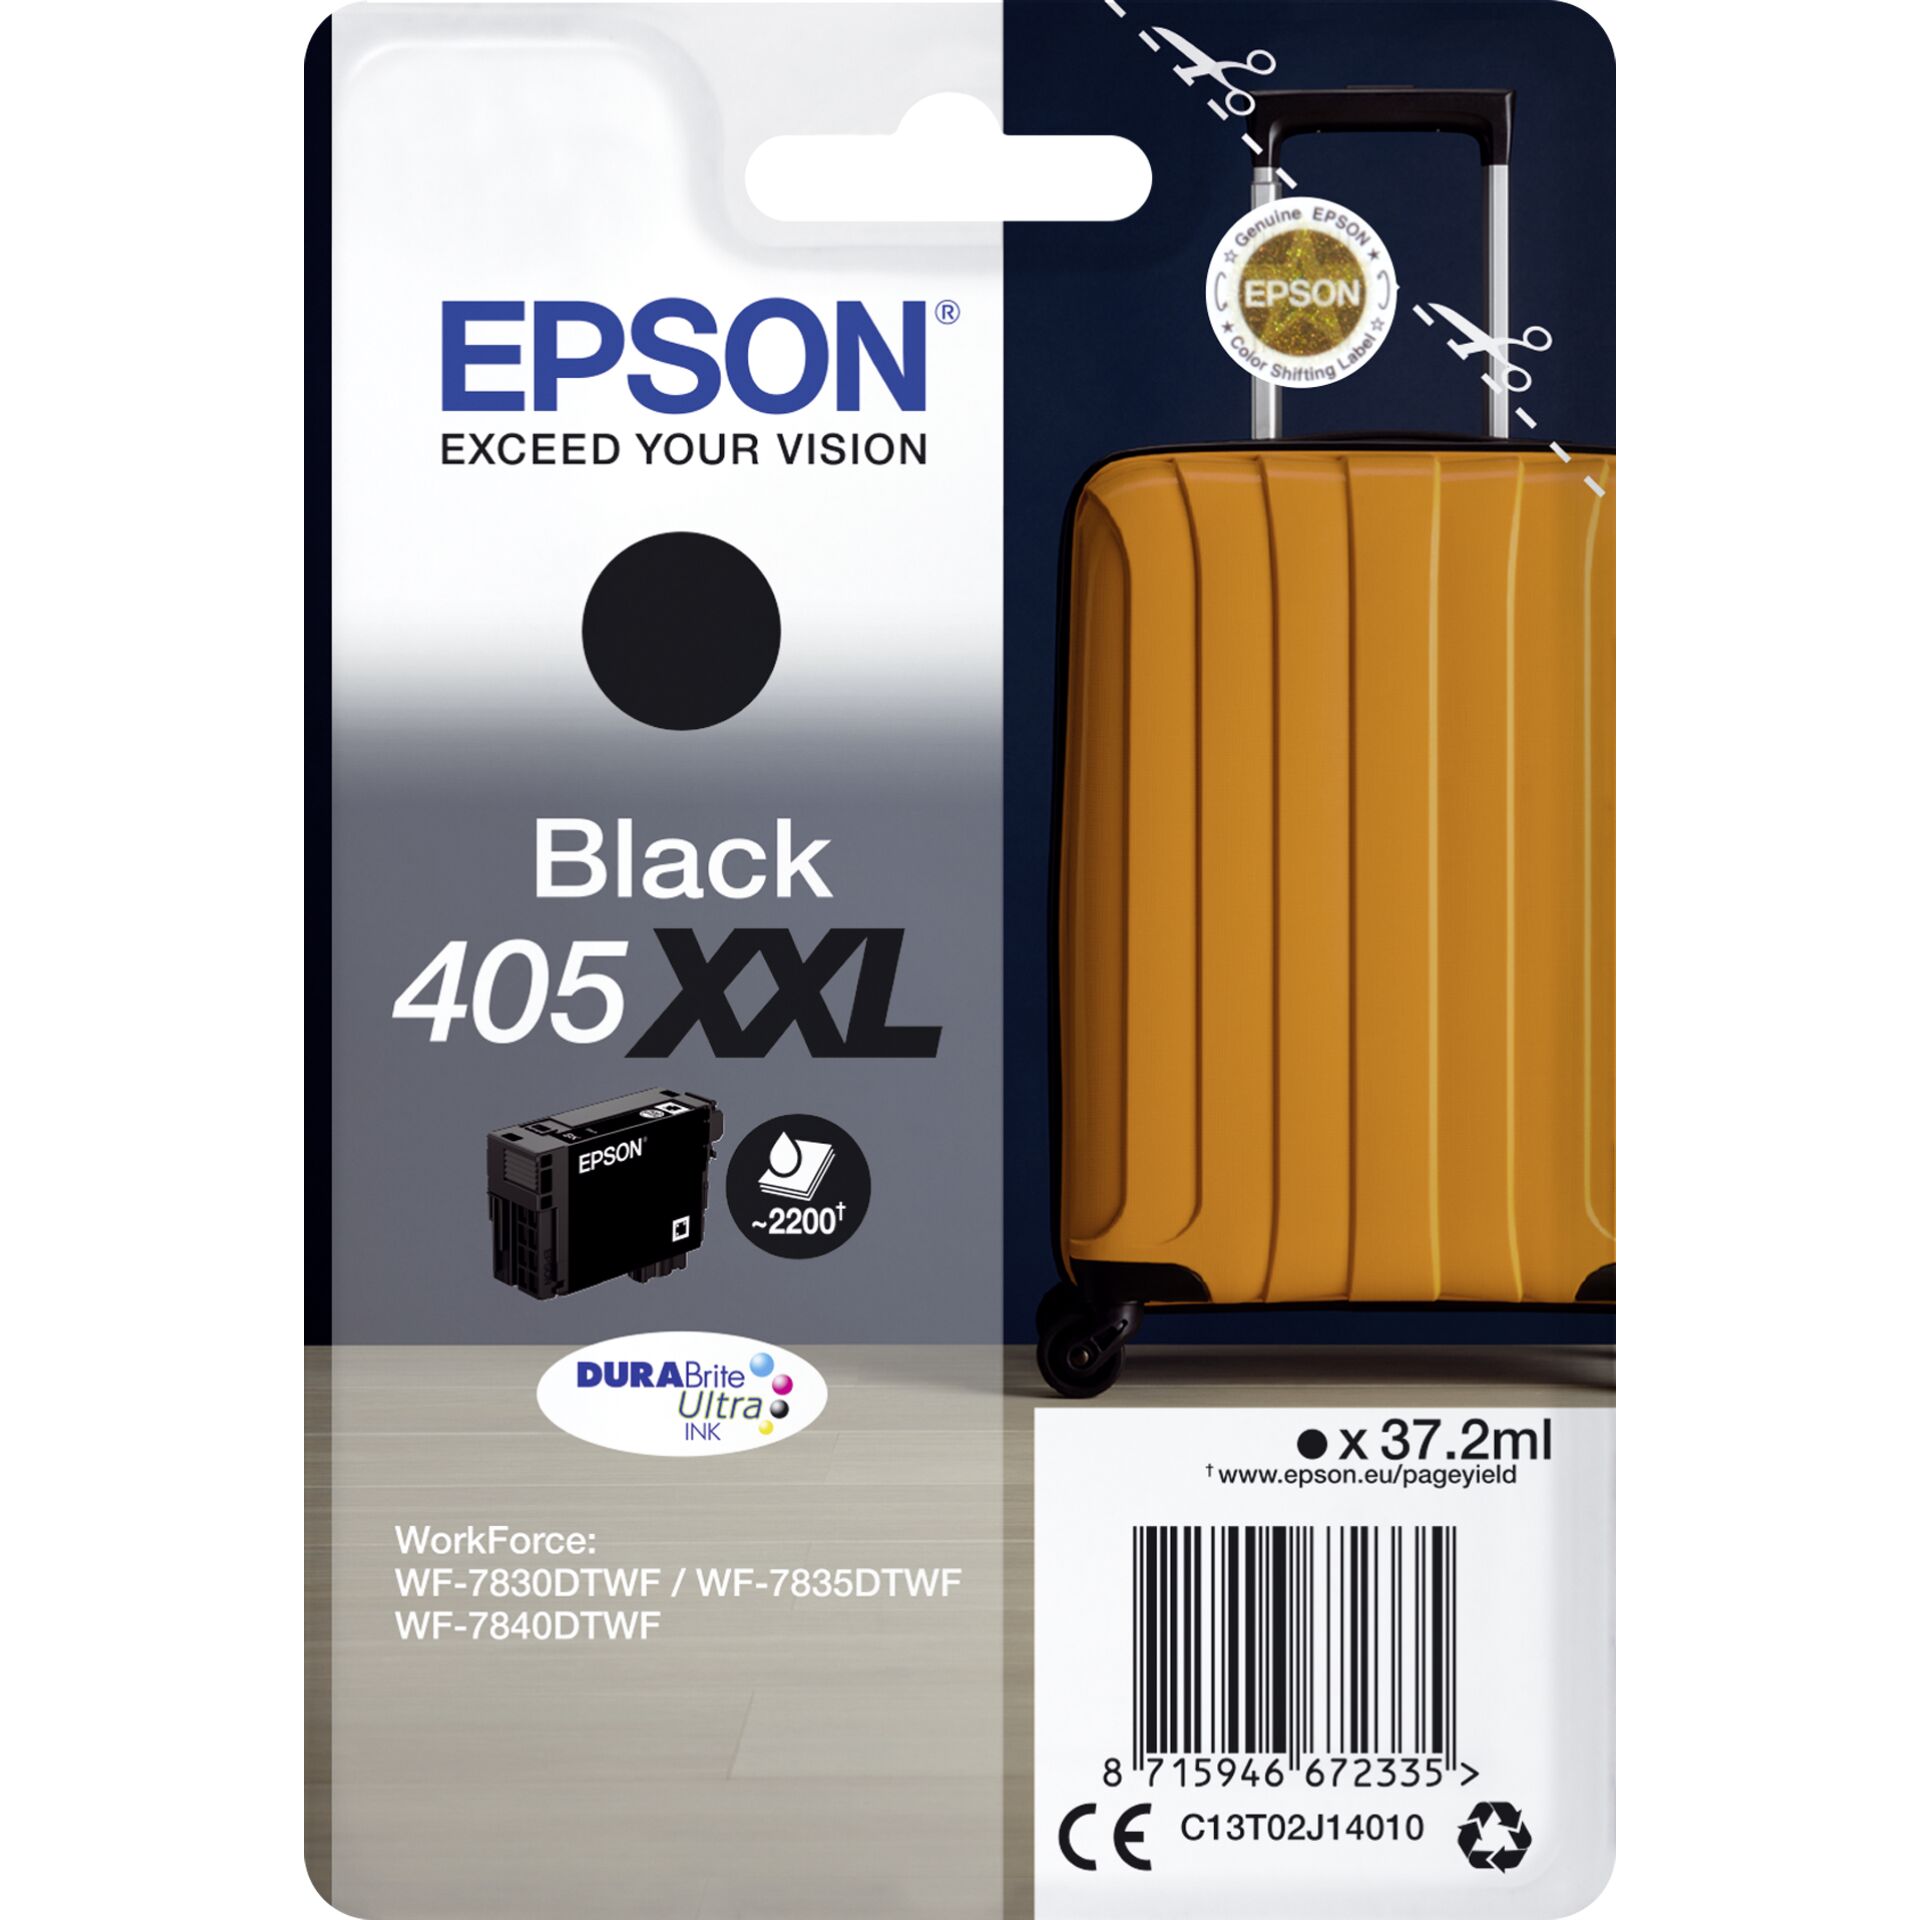 Epson Tinte 405XXL schwarz, 37.2ml 